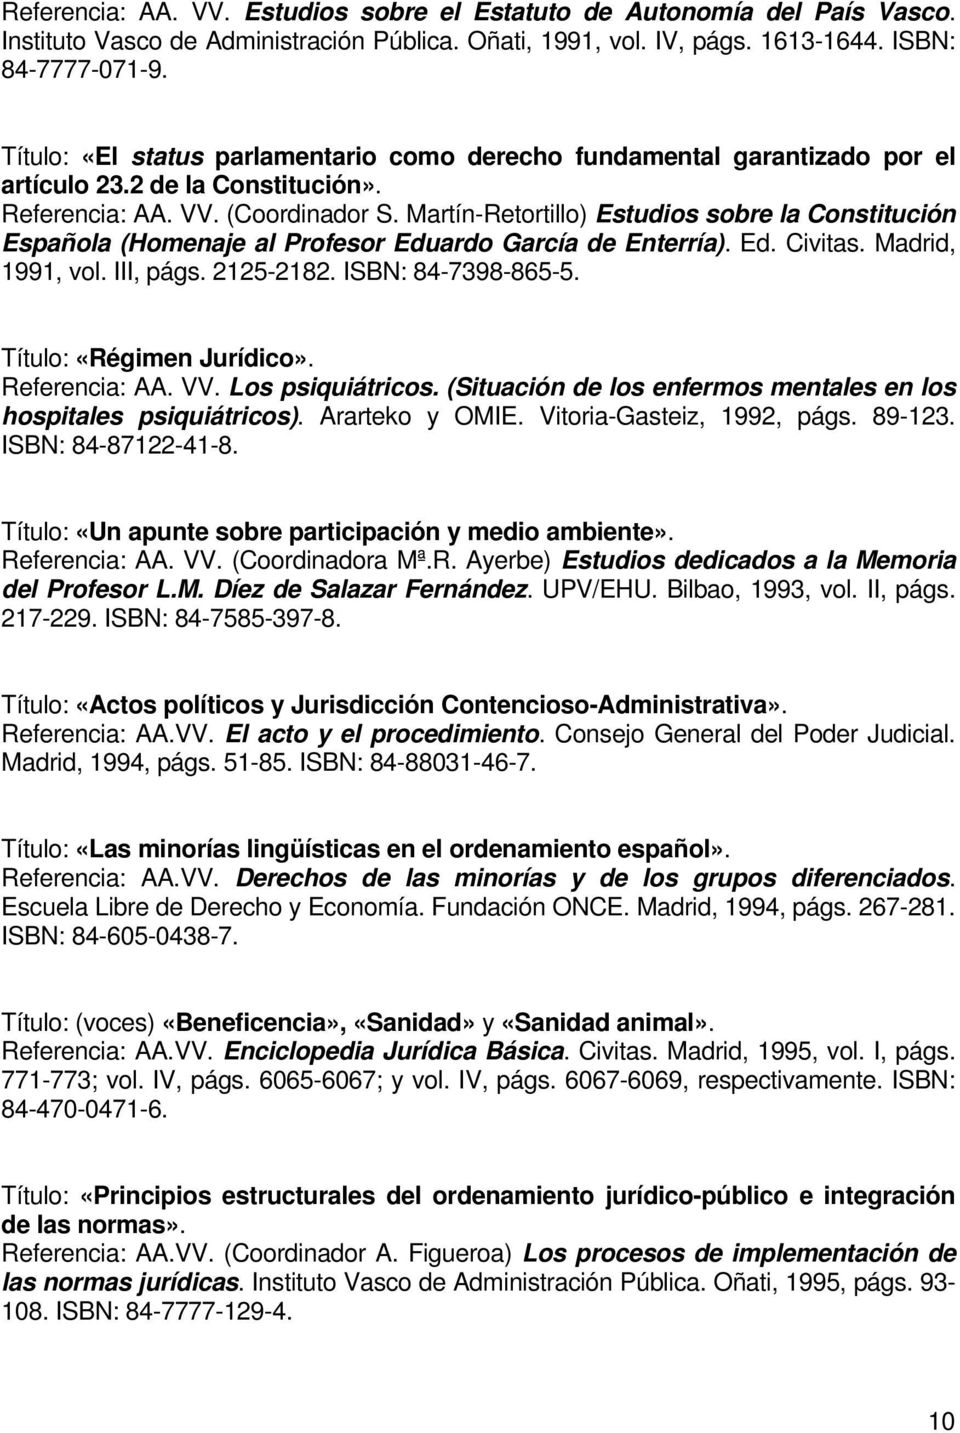 Martín-Retortillo) Estudios sobre la Constitución Española (Homenaje al Profesor Eduardo García de Enterría). Ed. Civitas. Madrid, 1991, vol. III, págs. 2125-2182. ISBN: 84-7398-865-5.